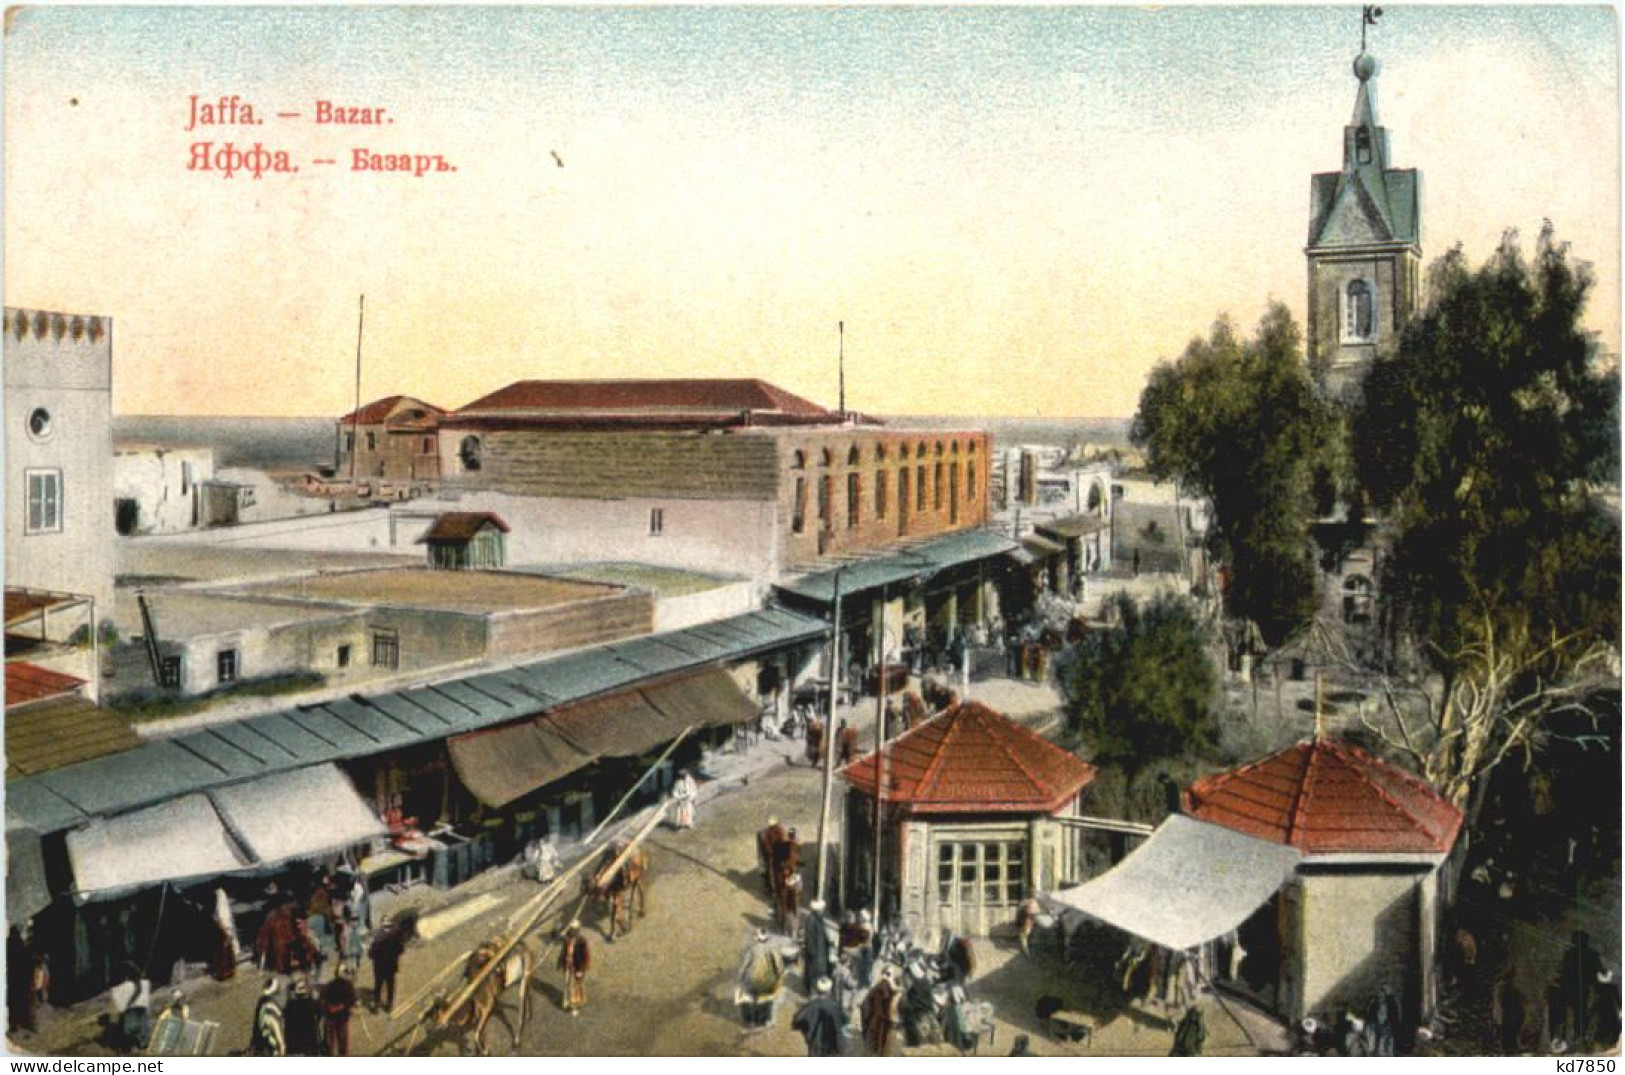 Jaffa - Bazar - Palästina